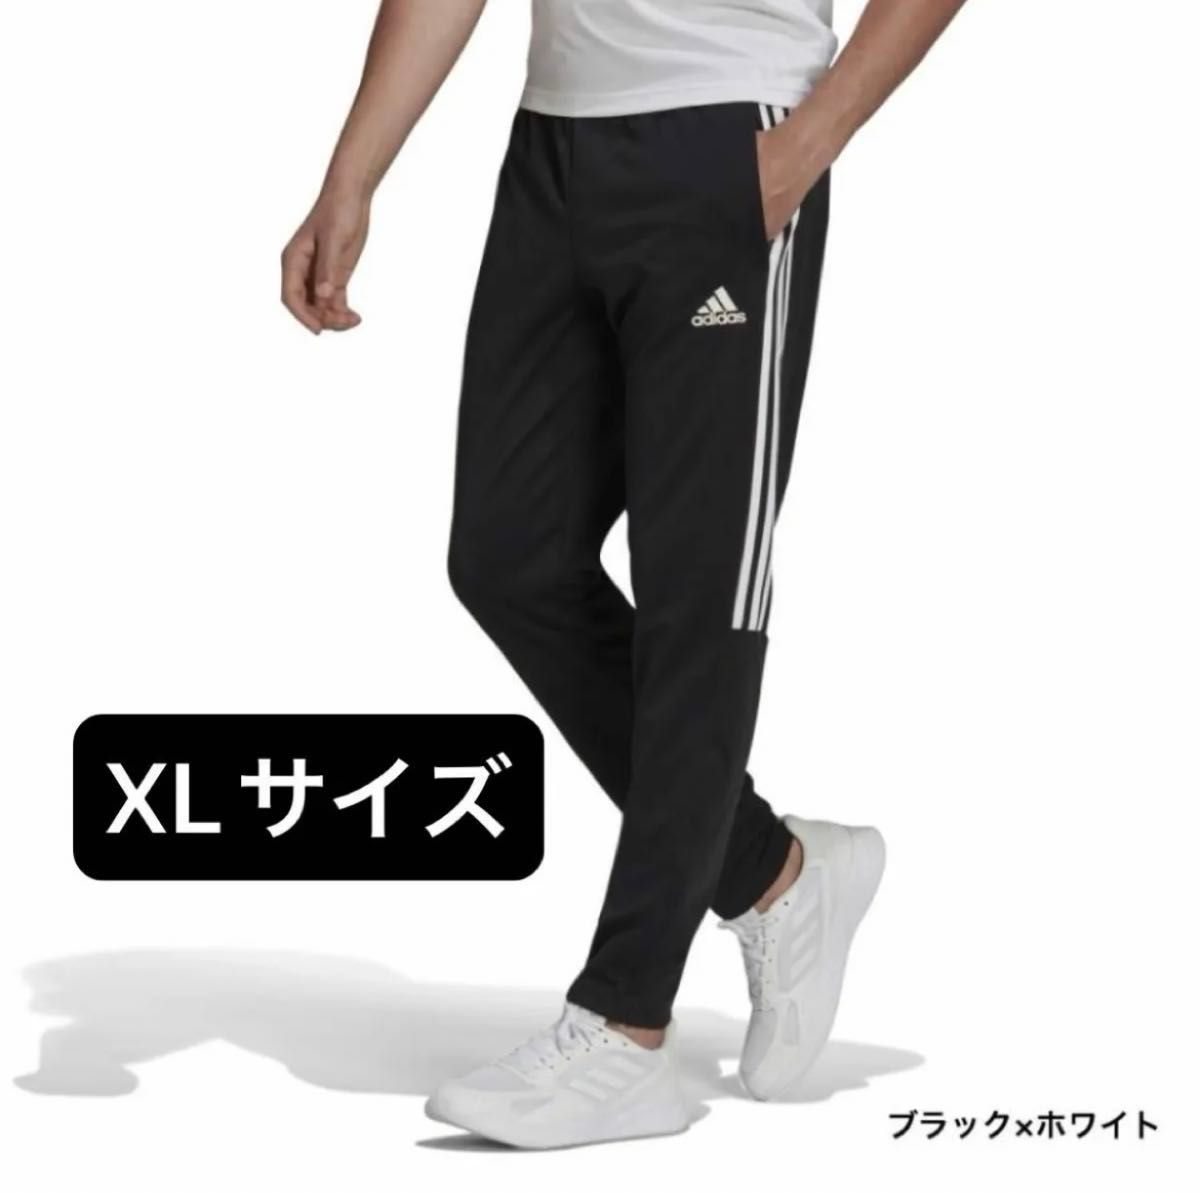 【新品未使用】【XLサイズ】adidas アディダス ジャージ IZA51 H28898 H28909 ブラック ホワイト